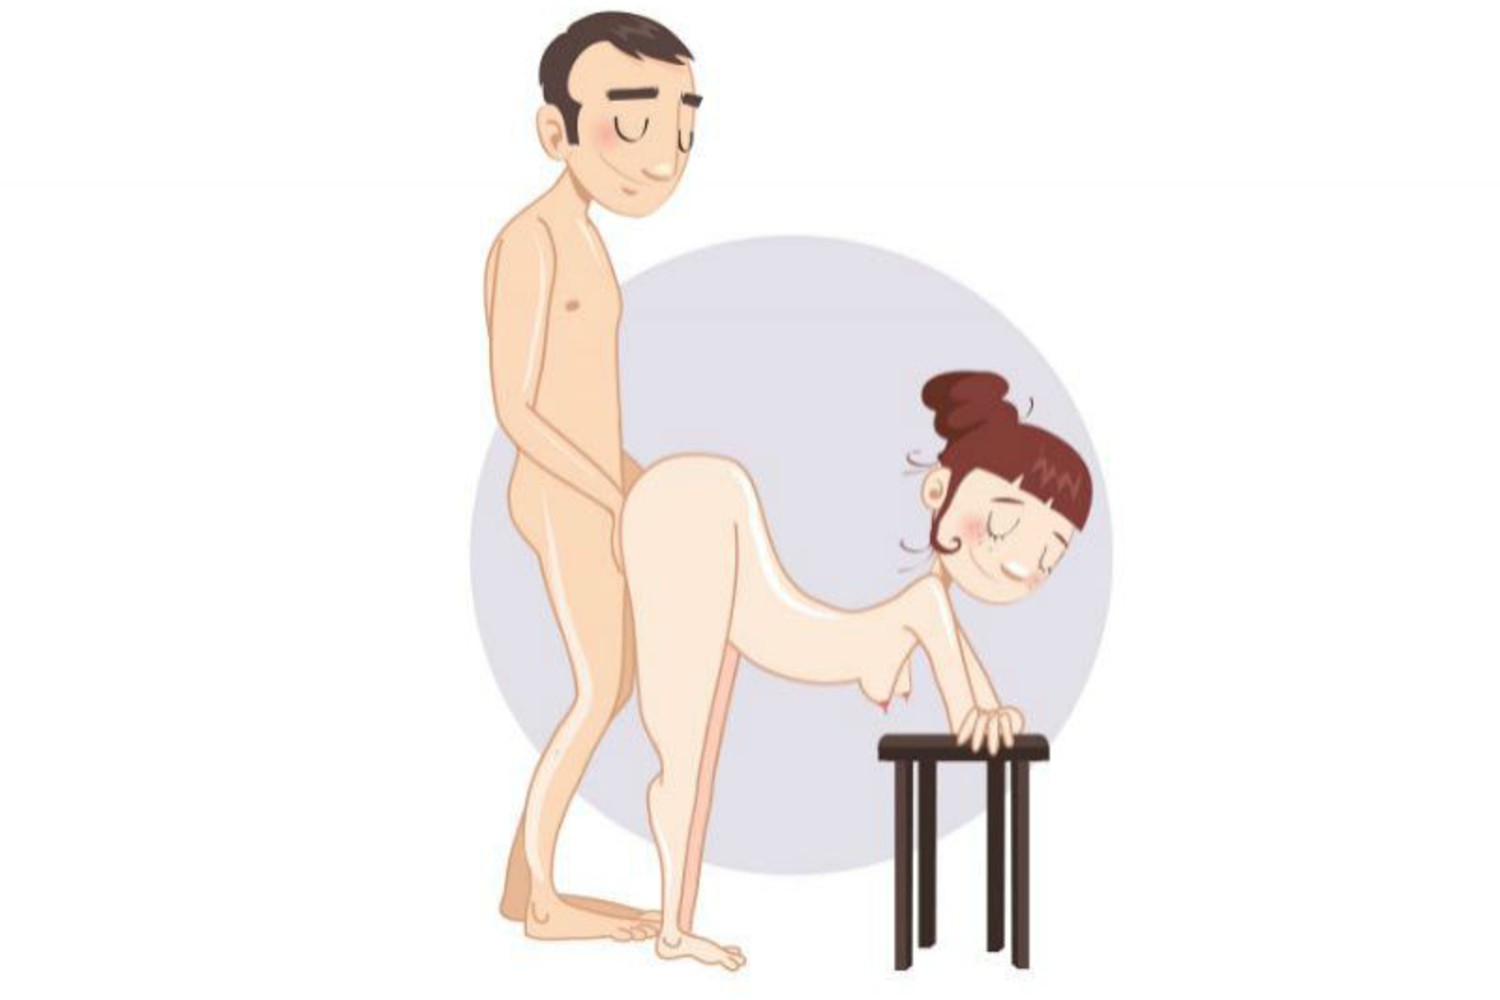 The Fan Sex Position